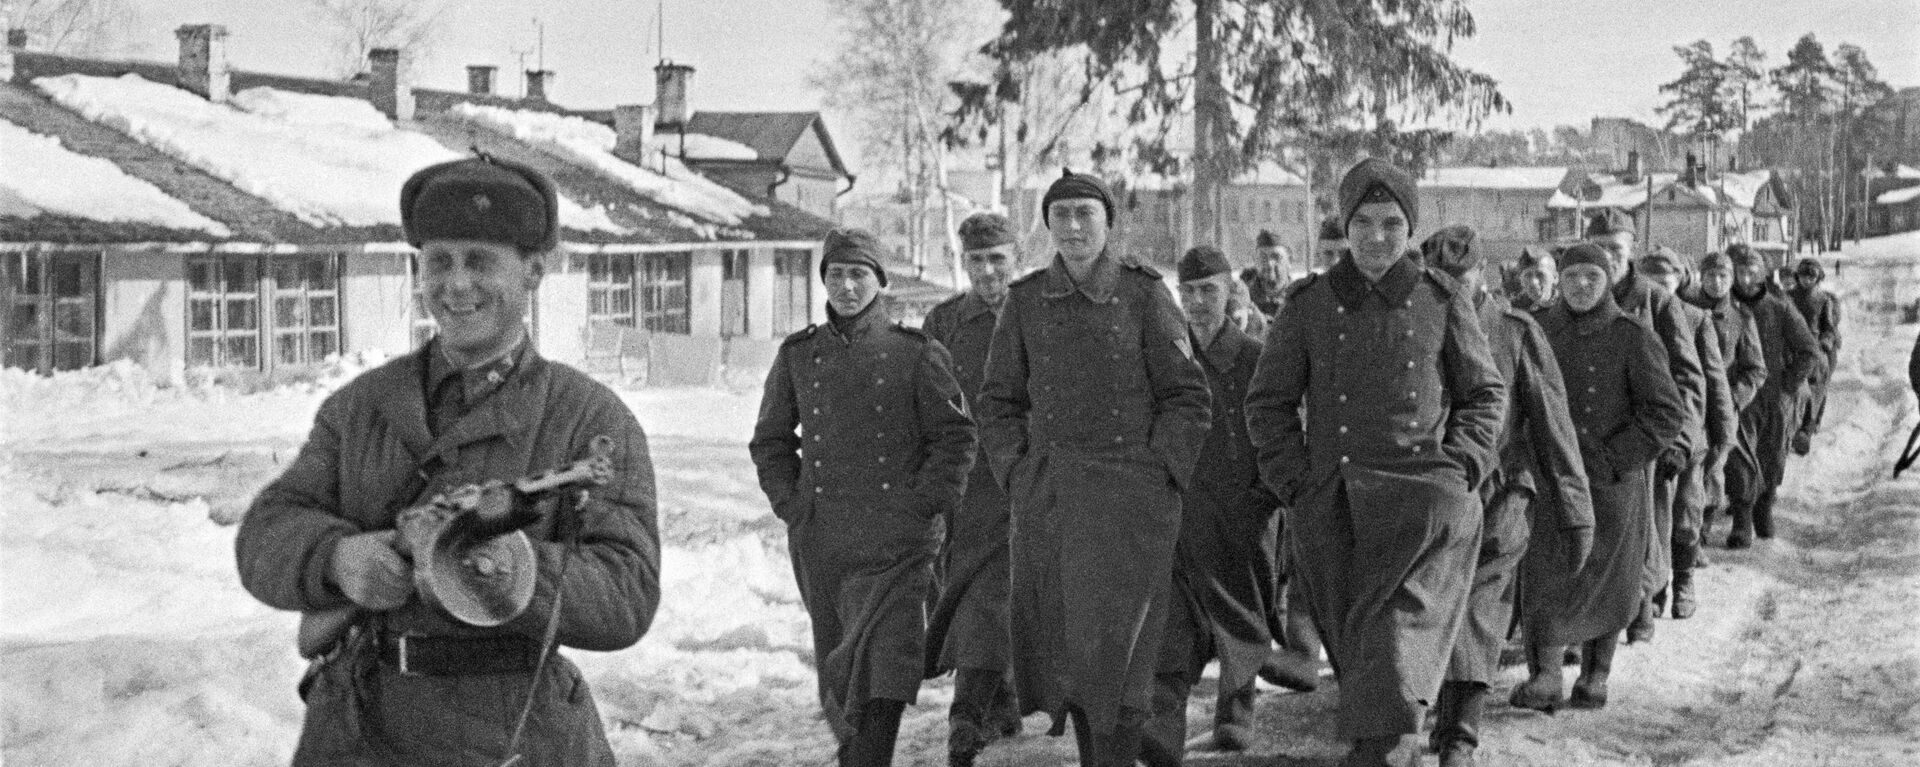 Пленные немцы под Москвой. 1941 год - Sputnik Latvija, 1920, 18.11.2021